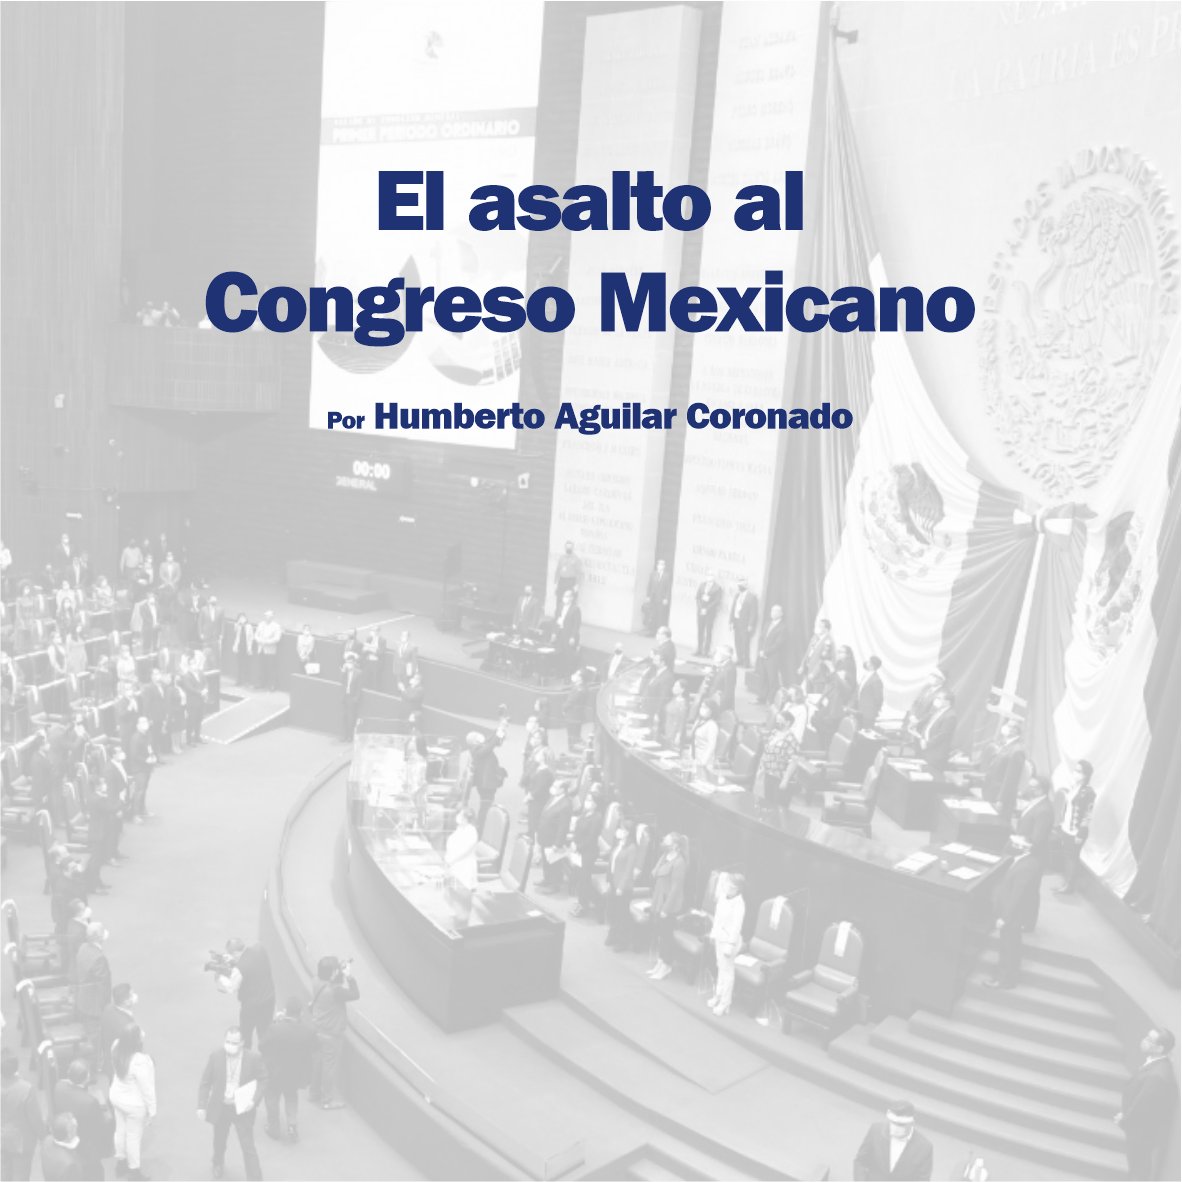 El asalto al Congreso Mexicano